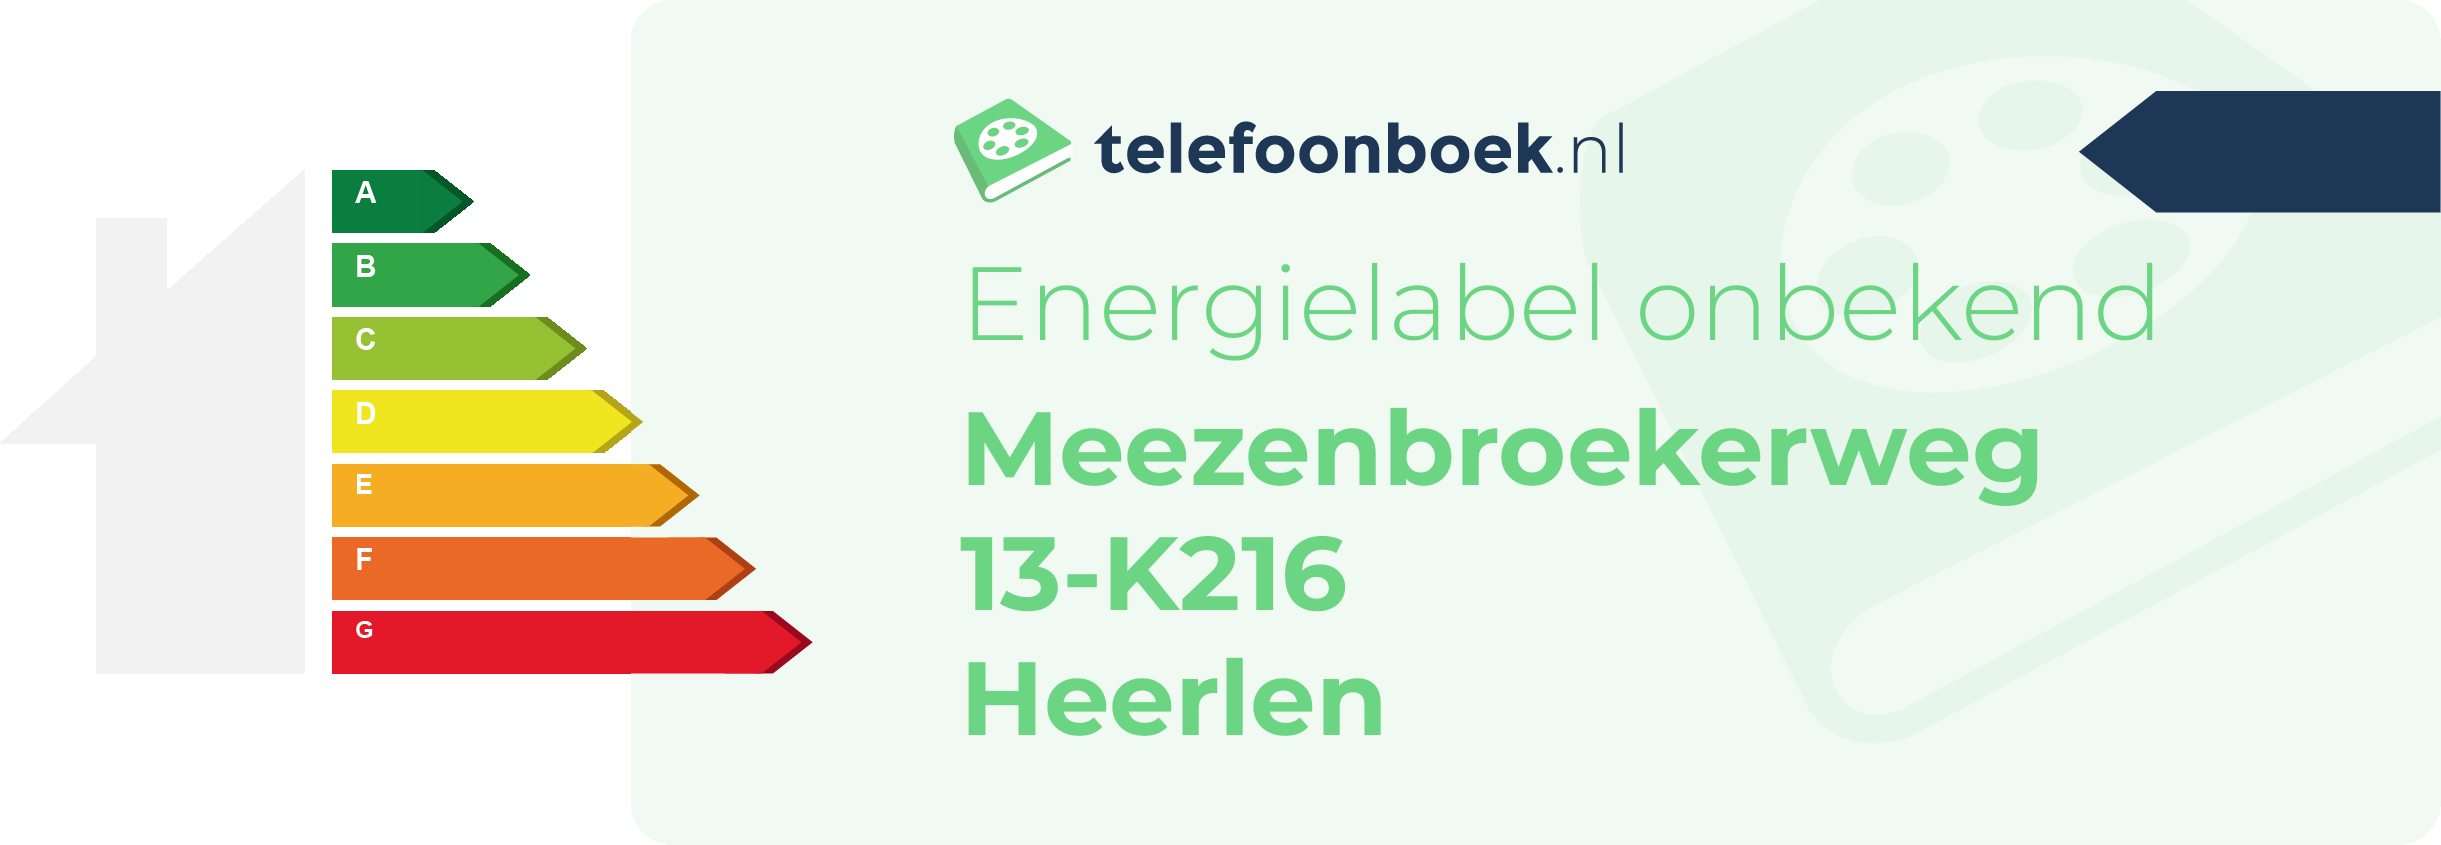 Energielabel Meezenbroekerweg 13-K216 Heerlen